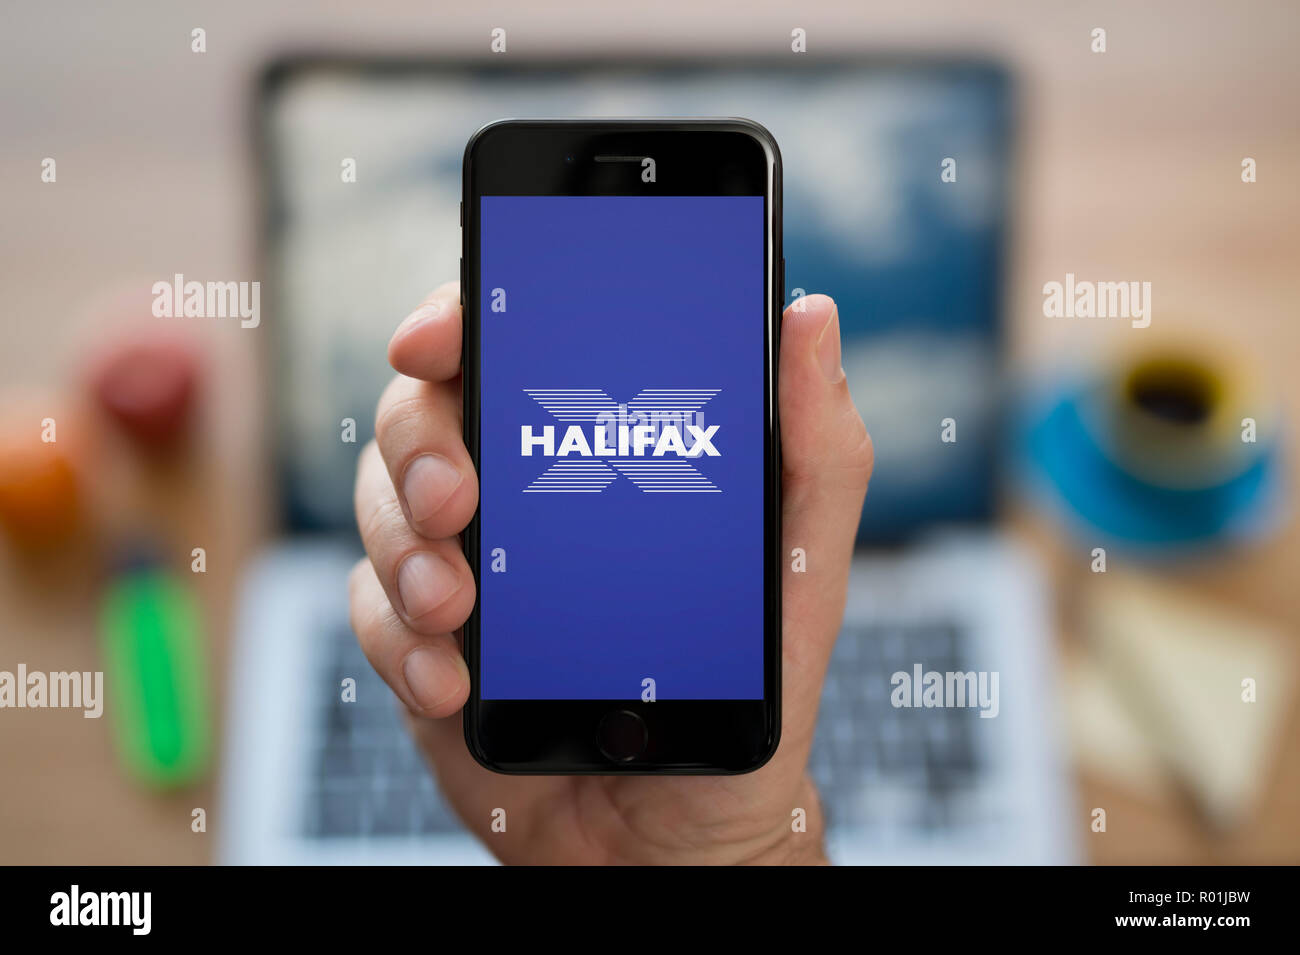 Un uomo guarda al suo iPhone che consente di visualizzare l'Halifax bank logo, mentre se ne sta seduto alla sua scrivania per computer (solo uso editoriale). Foto Stock